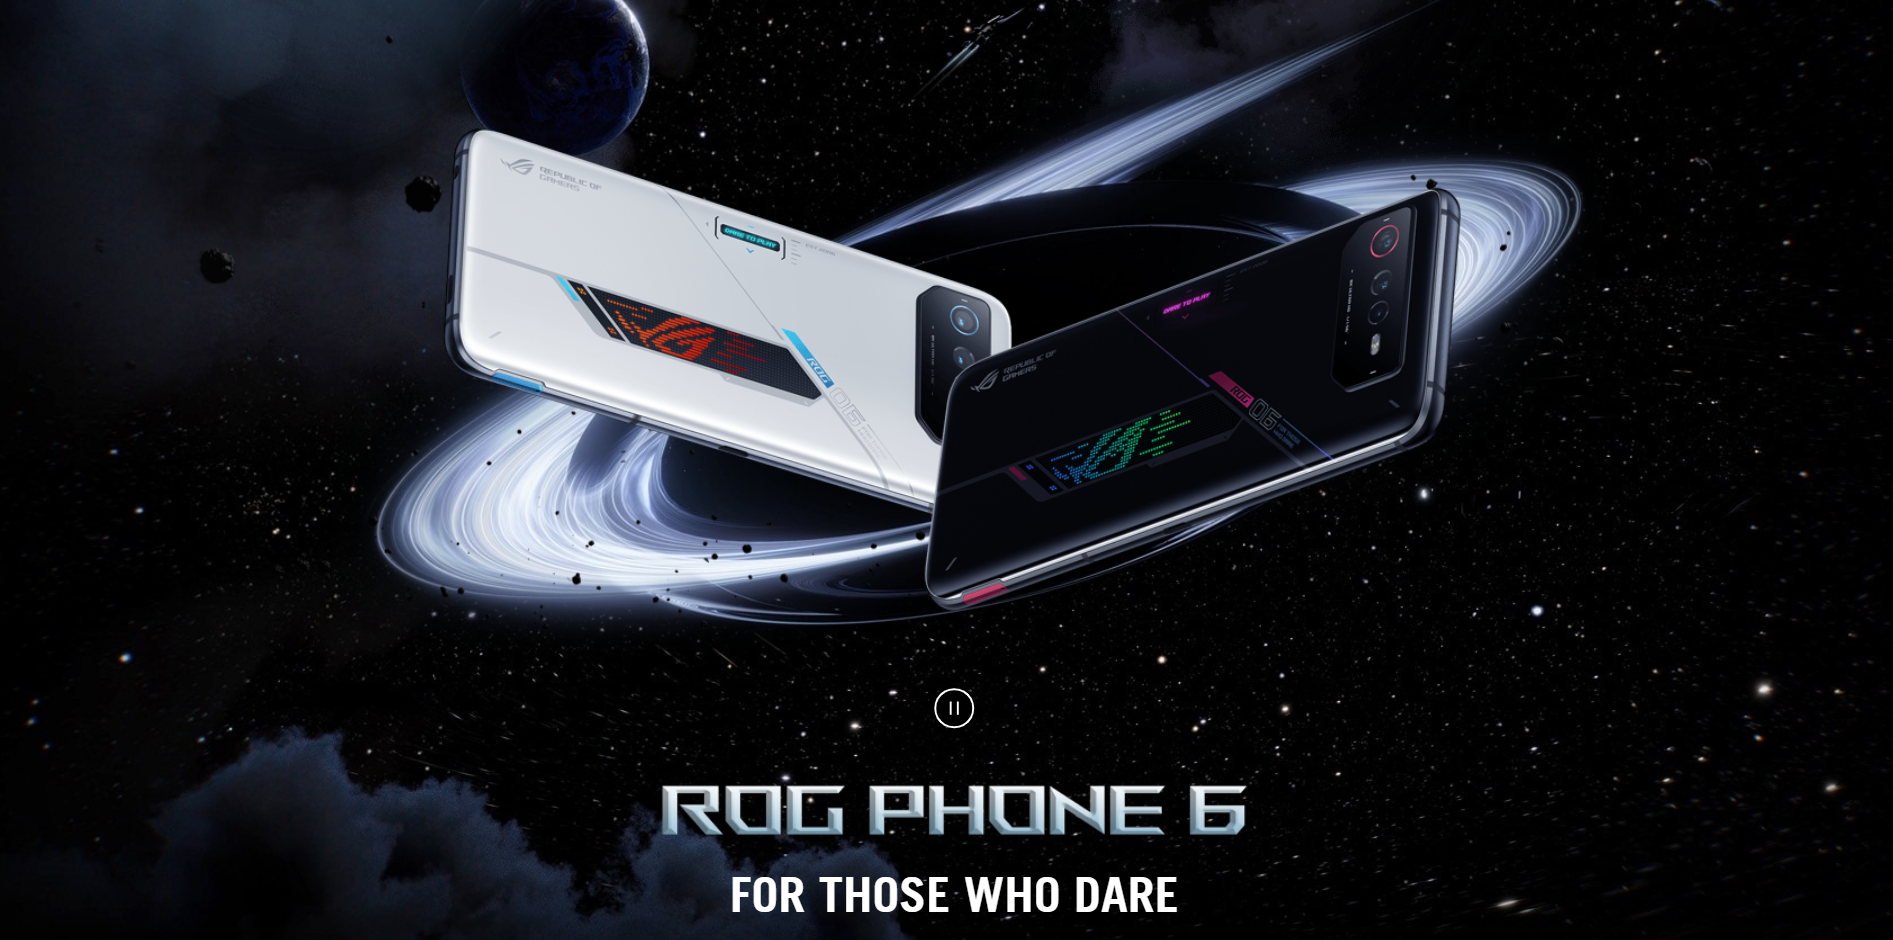 Spesifikasi ASUS ROG Phone 6, Hp Gaming Tangguh dengan Chipset Snapdragon 8+ Gen 1 yang Siap Bikin Makin Jago